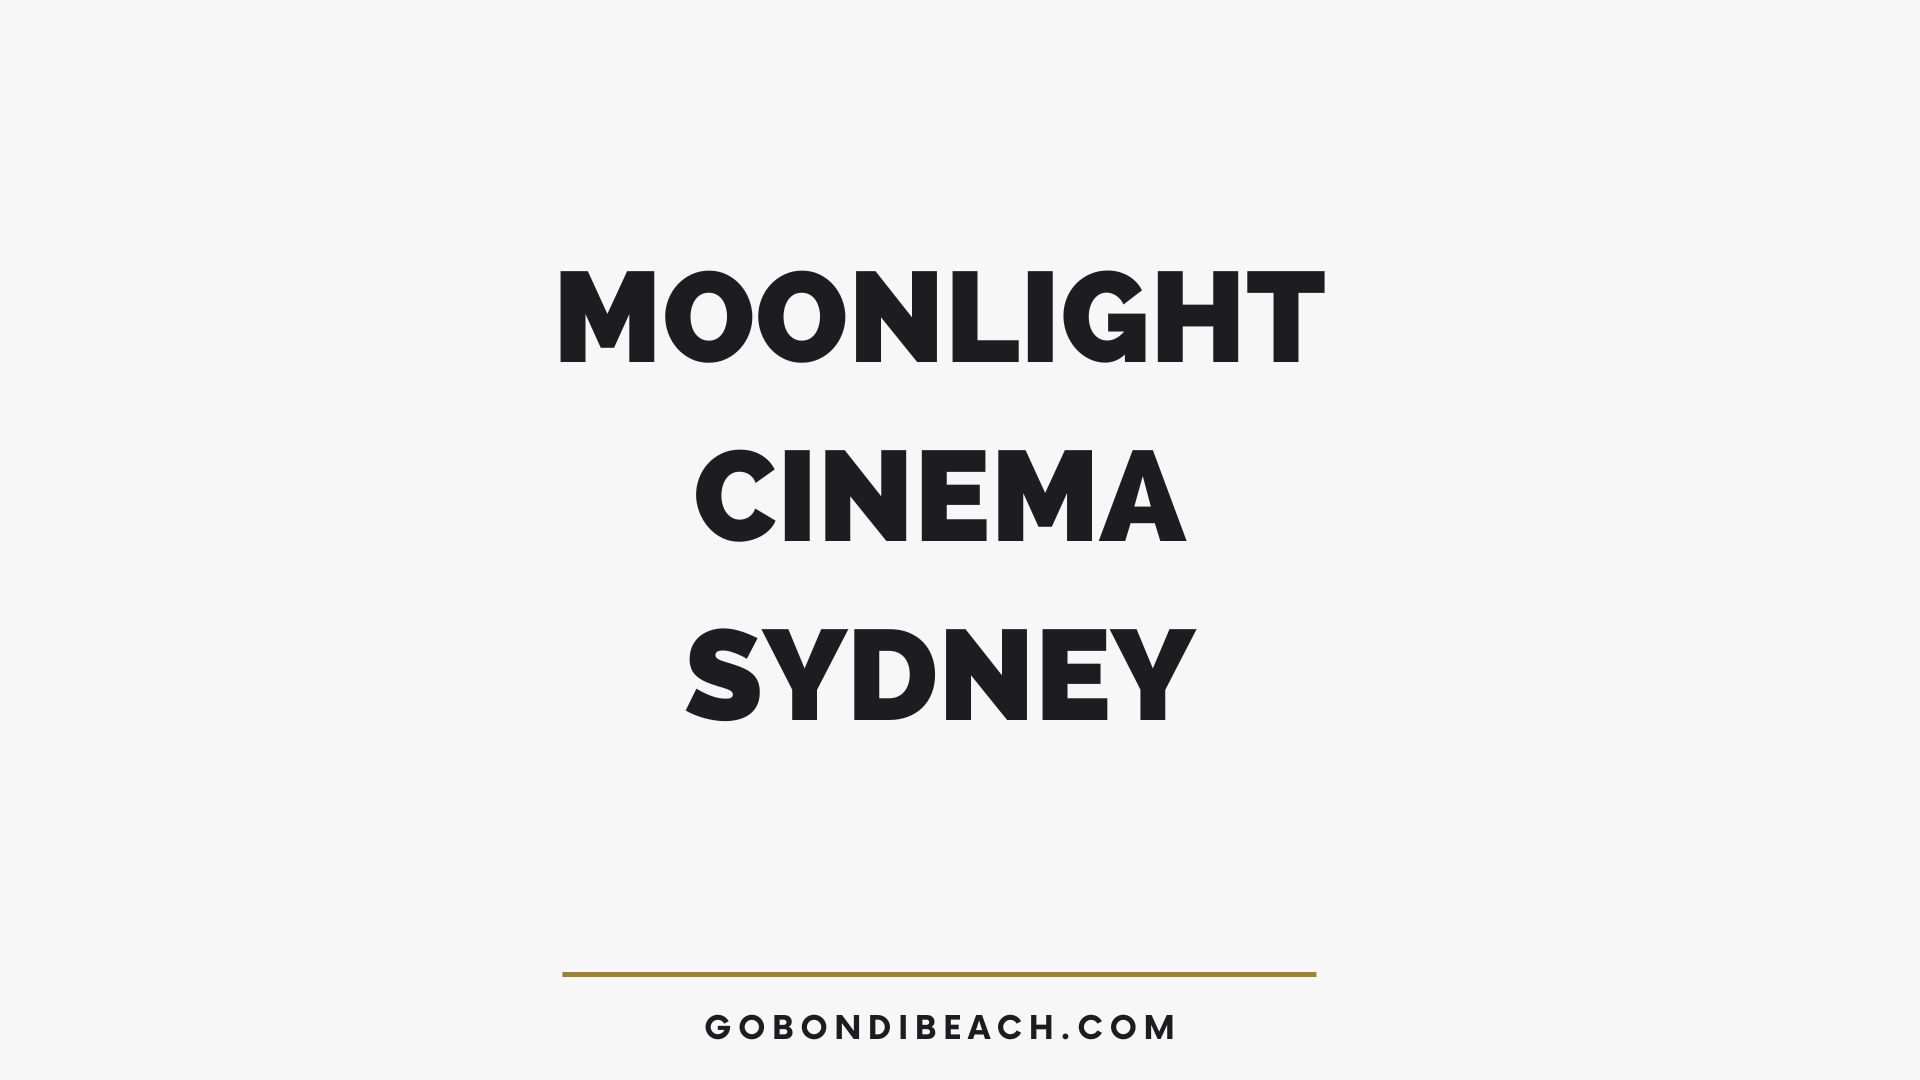 Moonlight Cinema Sydney